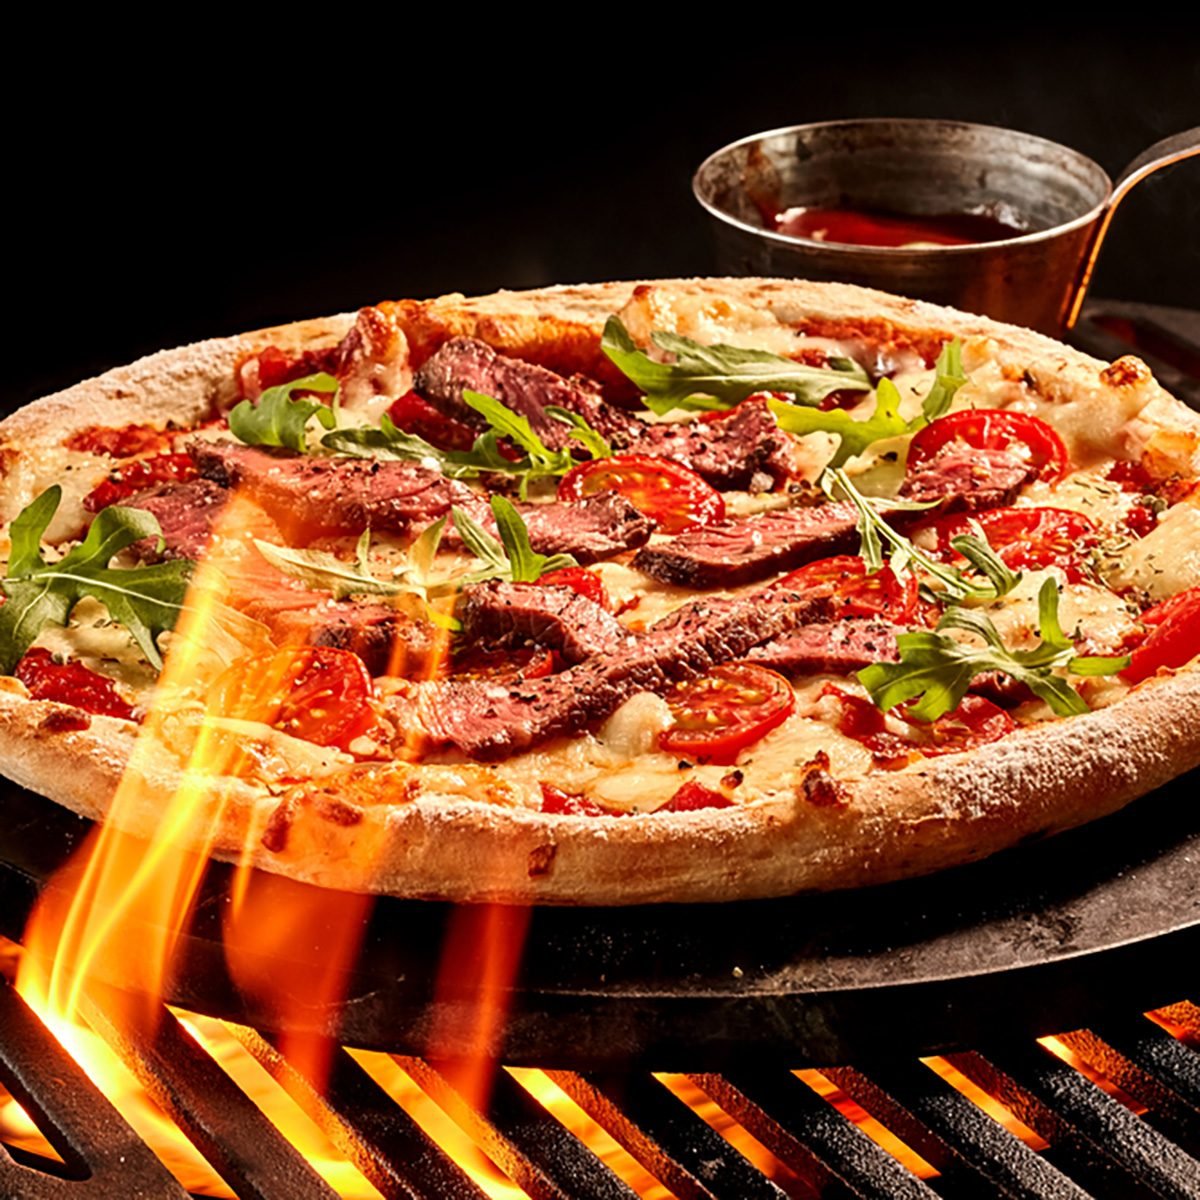 火焰伸向烤肉架上的肉类和蔬菜芝士披萨。辣酱放在铁盘上的碗里